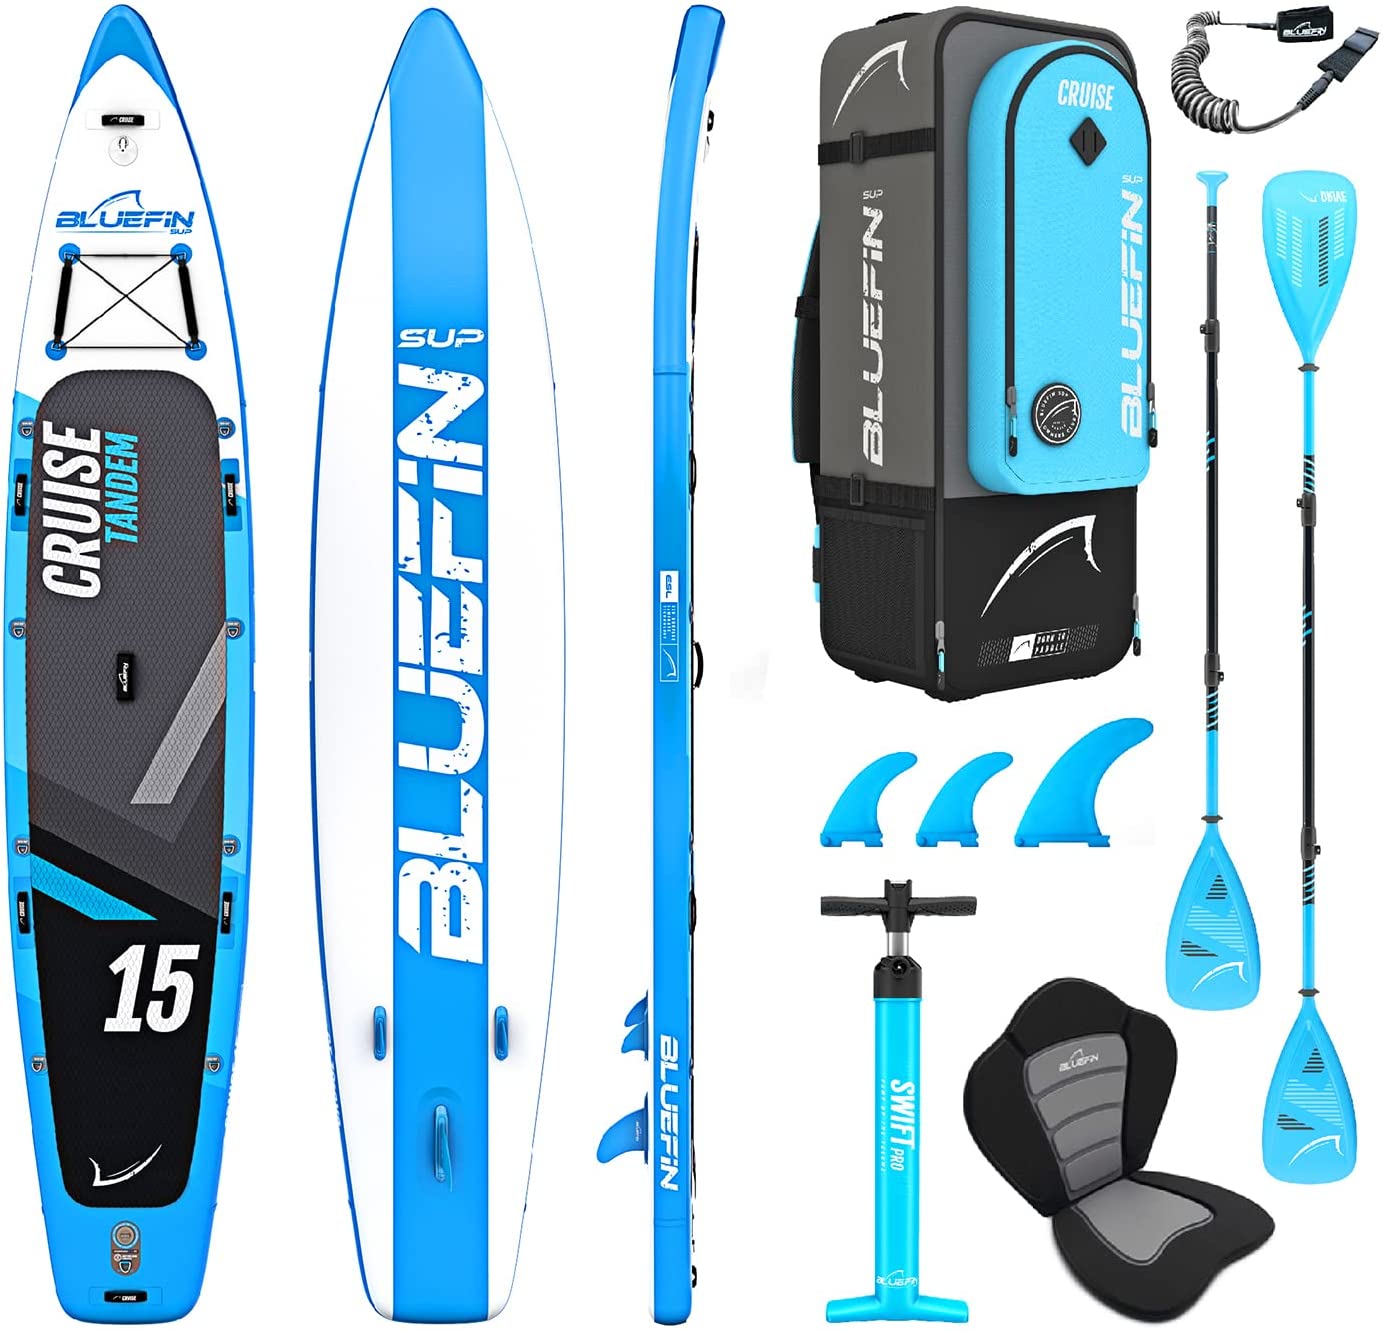 Paquete de Sup Bluefin Cruise | Tabla de Paddle Surf Hinchable | Remo de Fibra de Vidrio | Kit de Conversión a Kayak | Accesorios Completos | 5 Años de Garantía | Varias Medidas: 10’8, 12’, 15